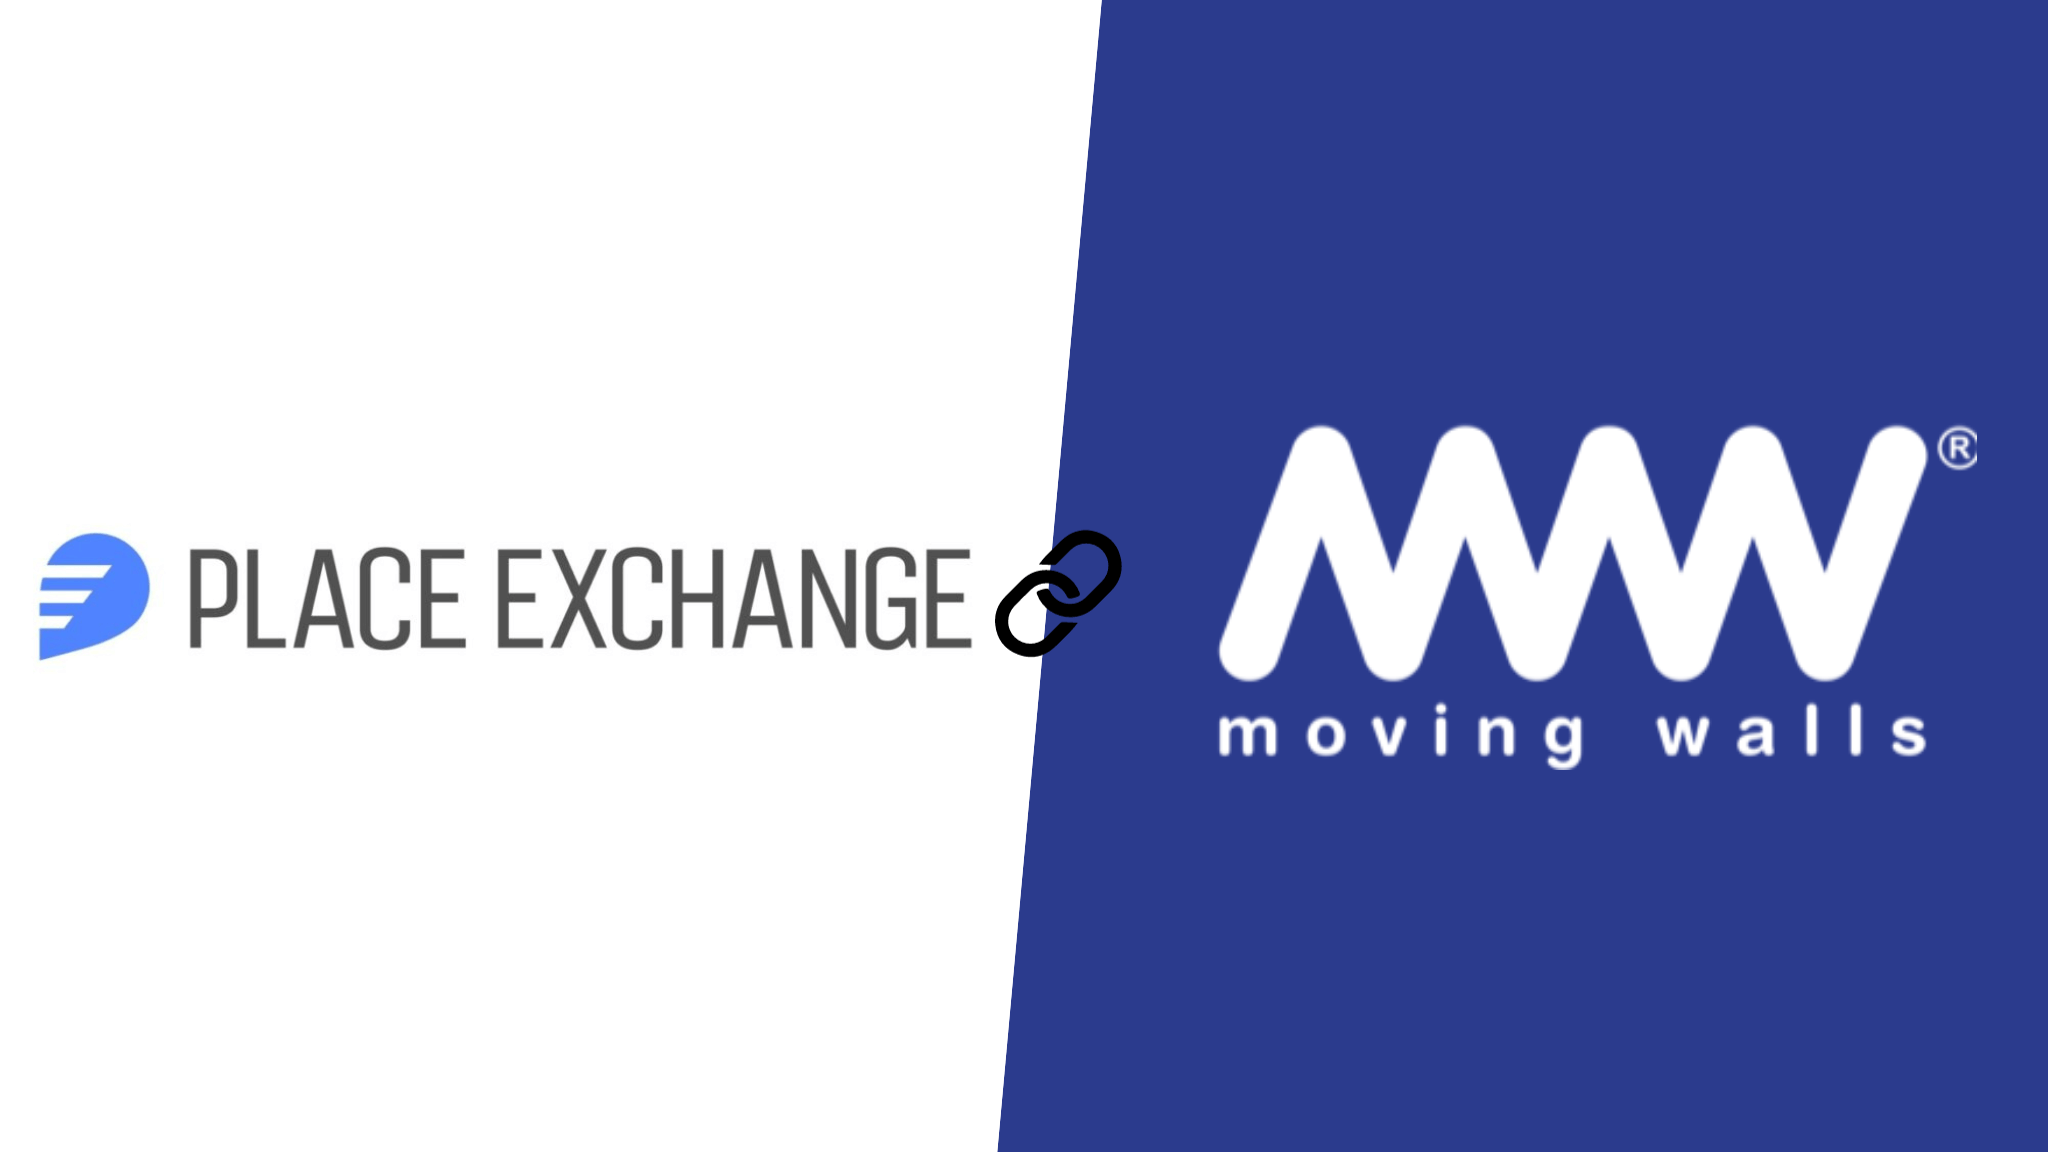 Moving Walls’ が Place Exchange と提携、...